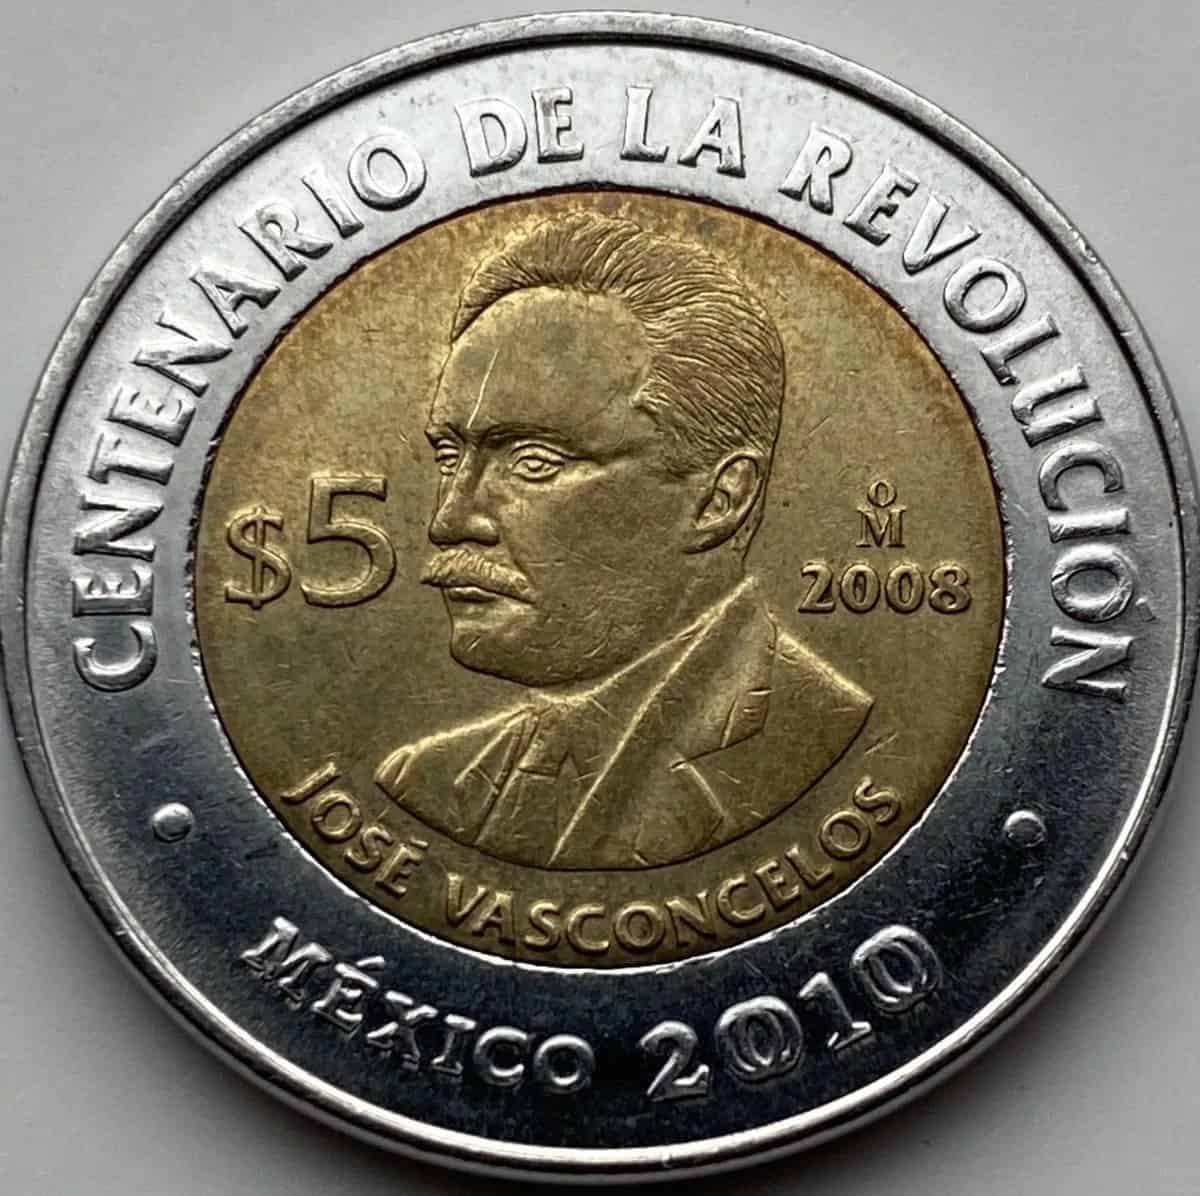 Moneda conmemorativa de 5 pesos se vende hasta en $750 mil pesos en Mercado Libre